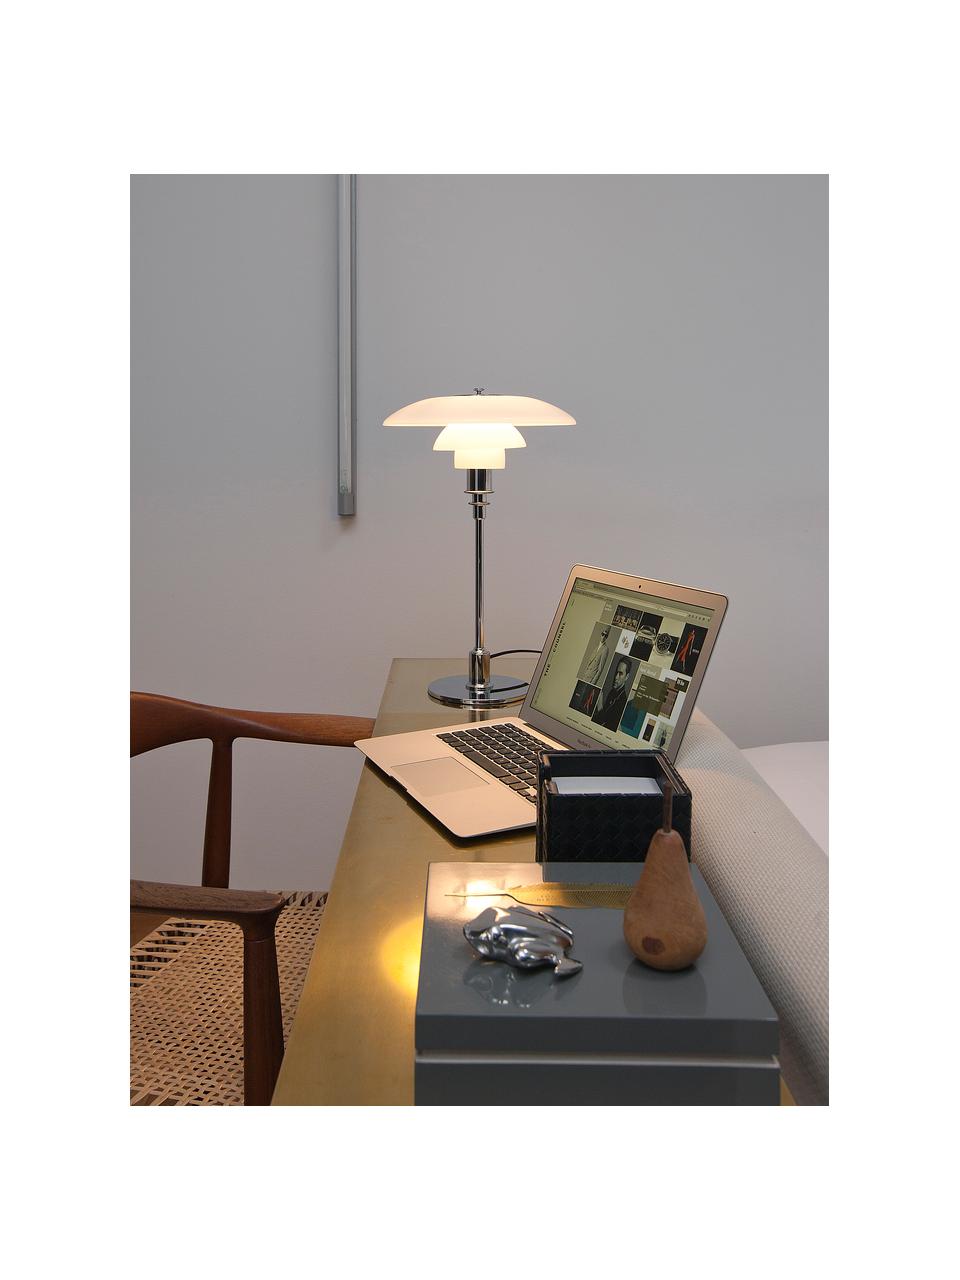 Lampa stołowa ze szkła dmuchanego PH 3/2, Stelaż: mosiądz chromowany, Odcienie srebrnego, biały, Ø 29 x W 47 cm